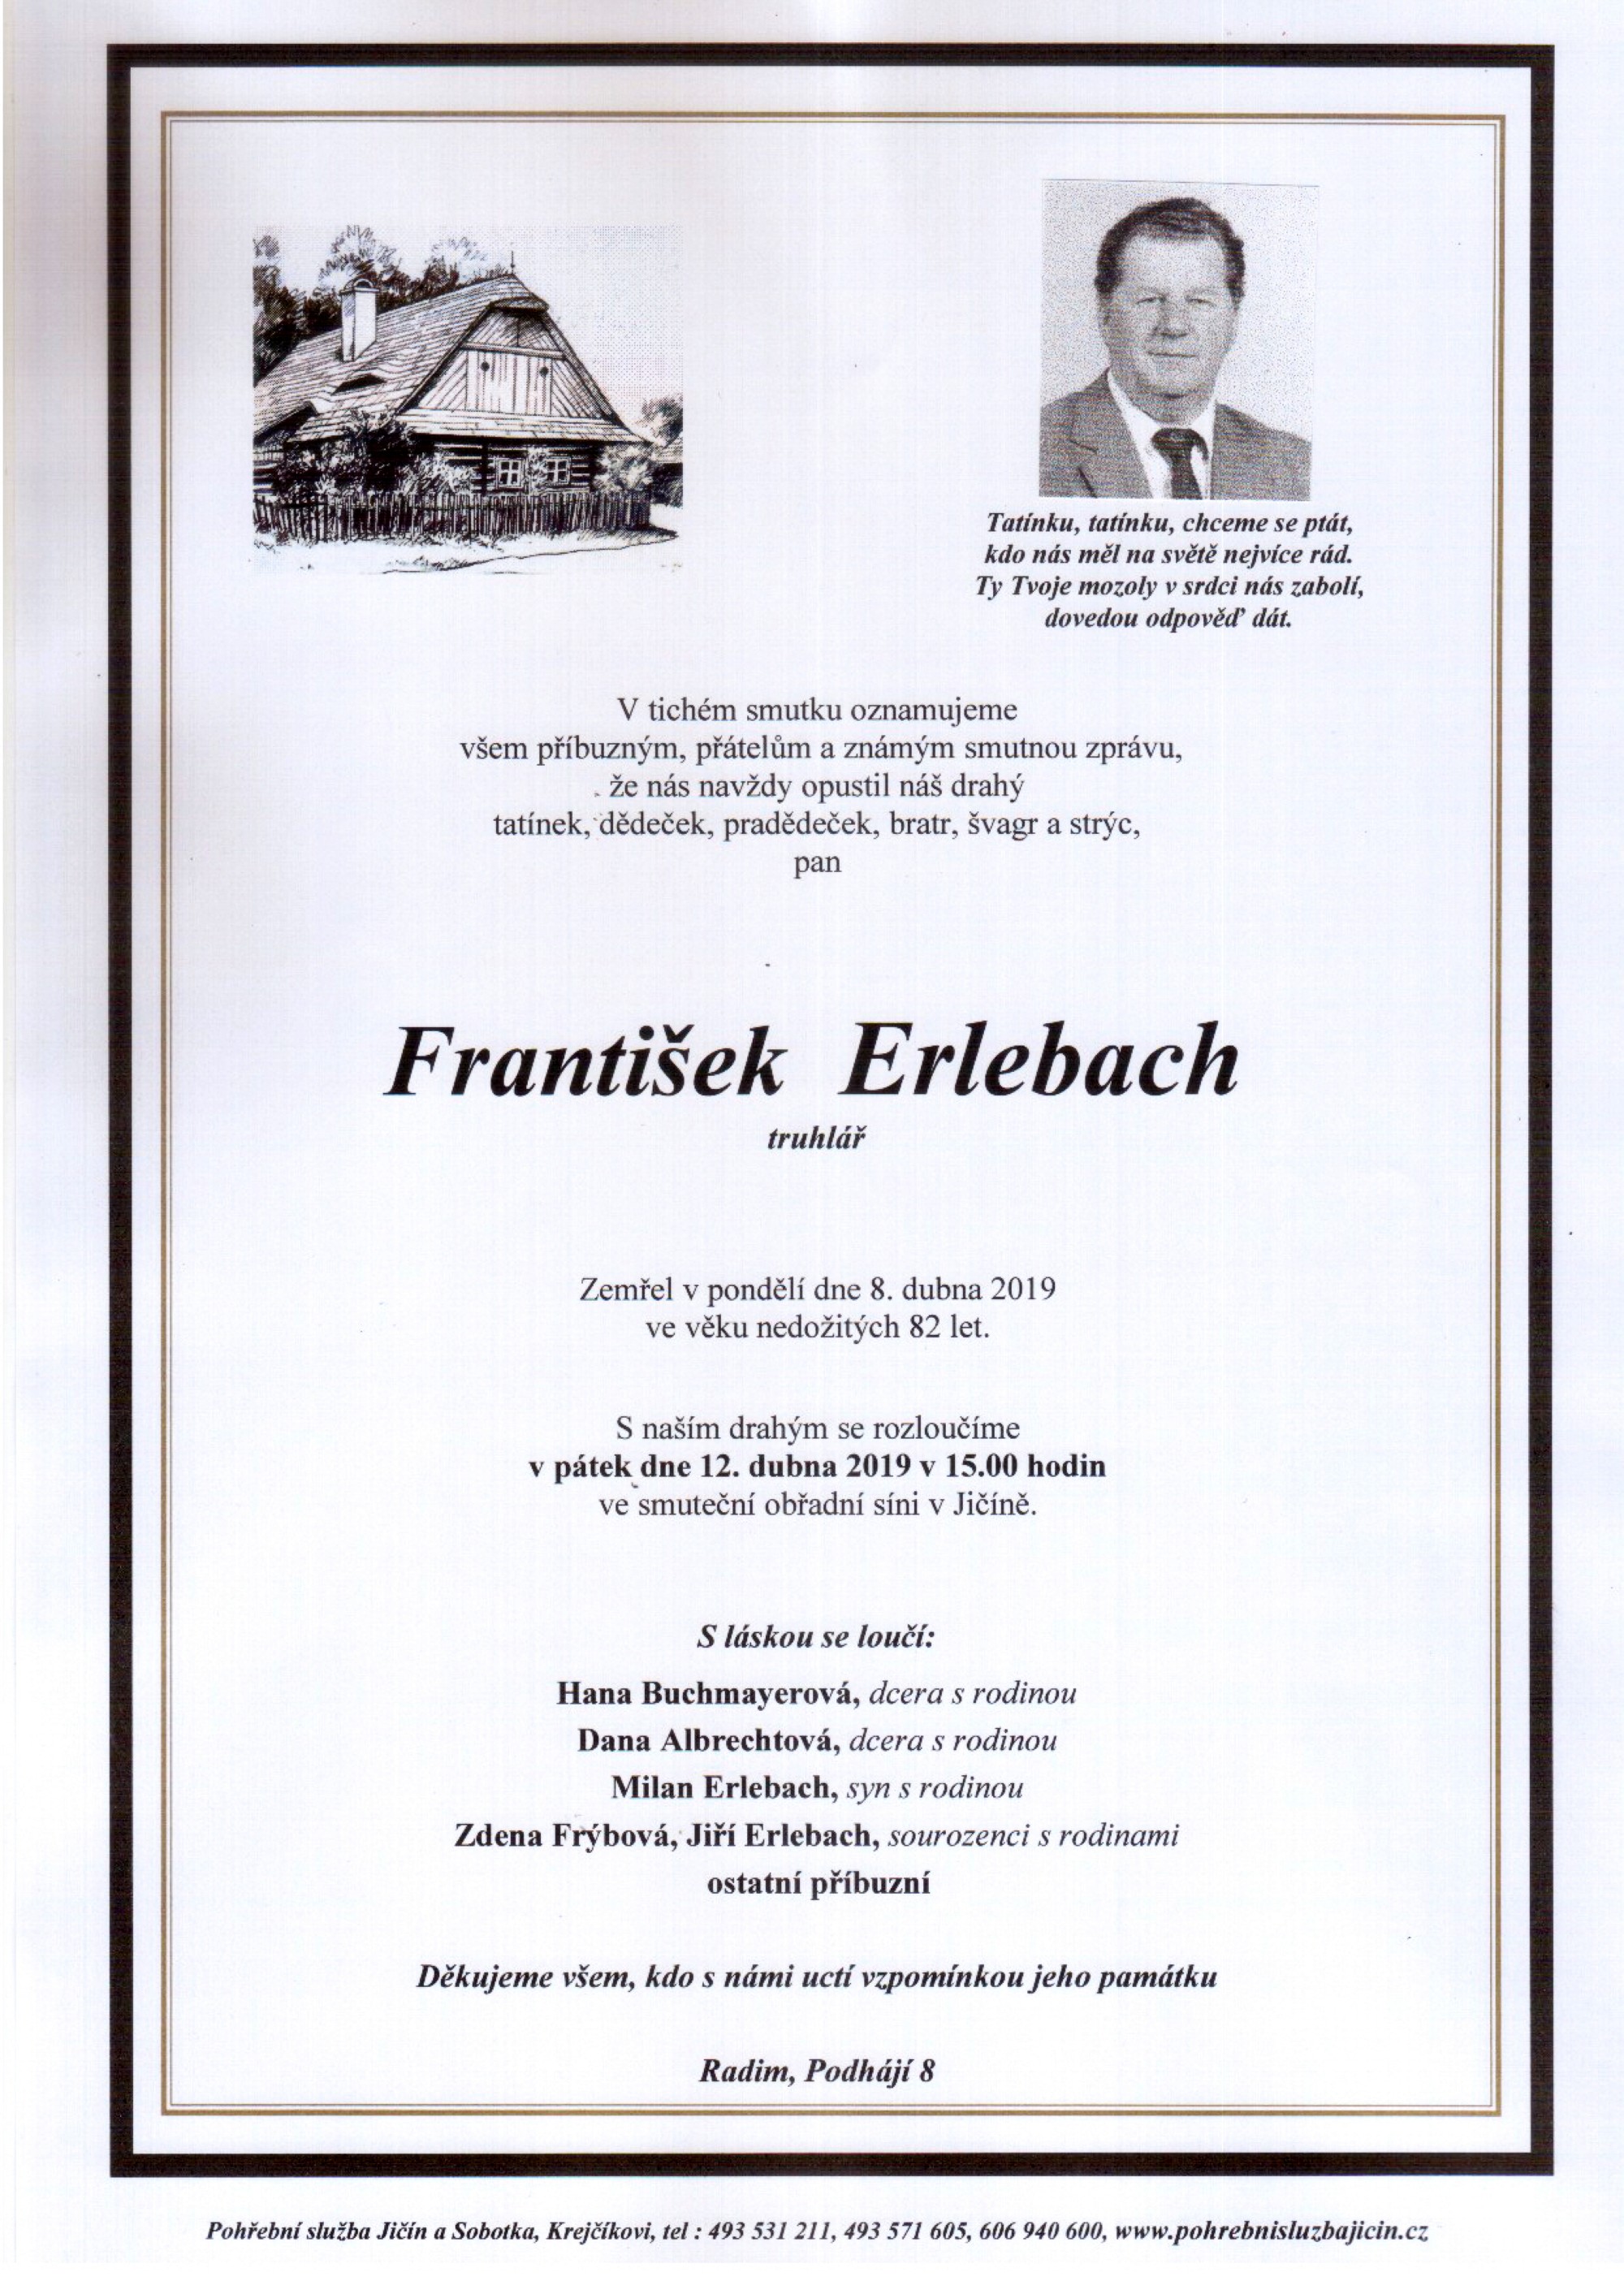 František Erlebach